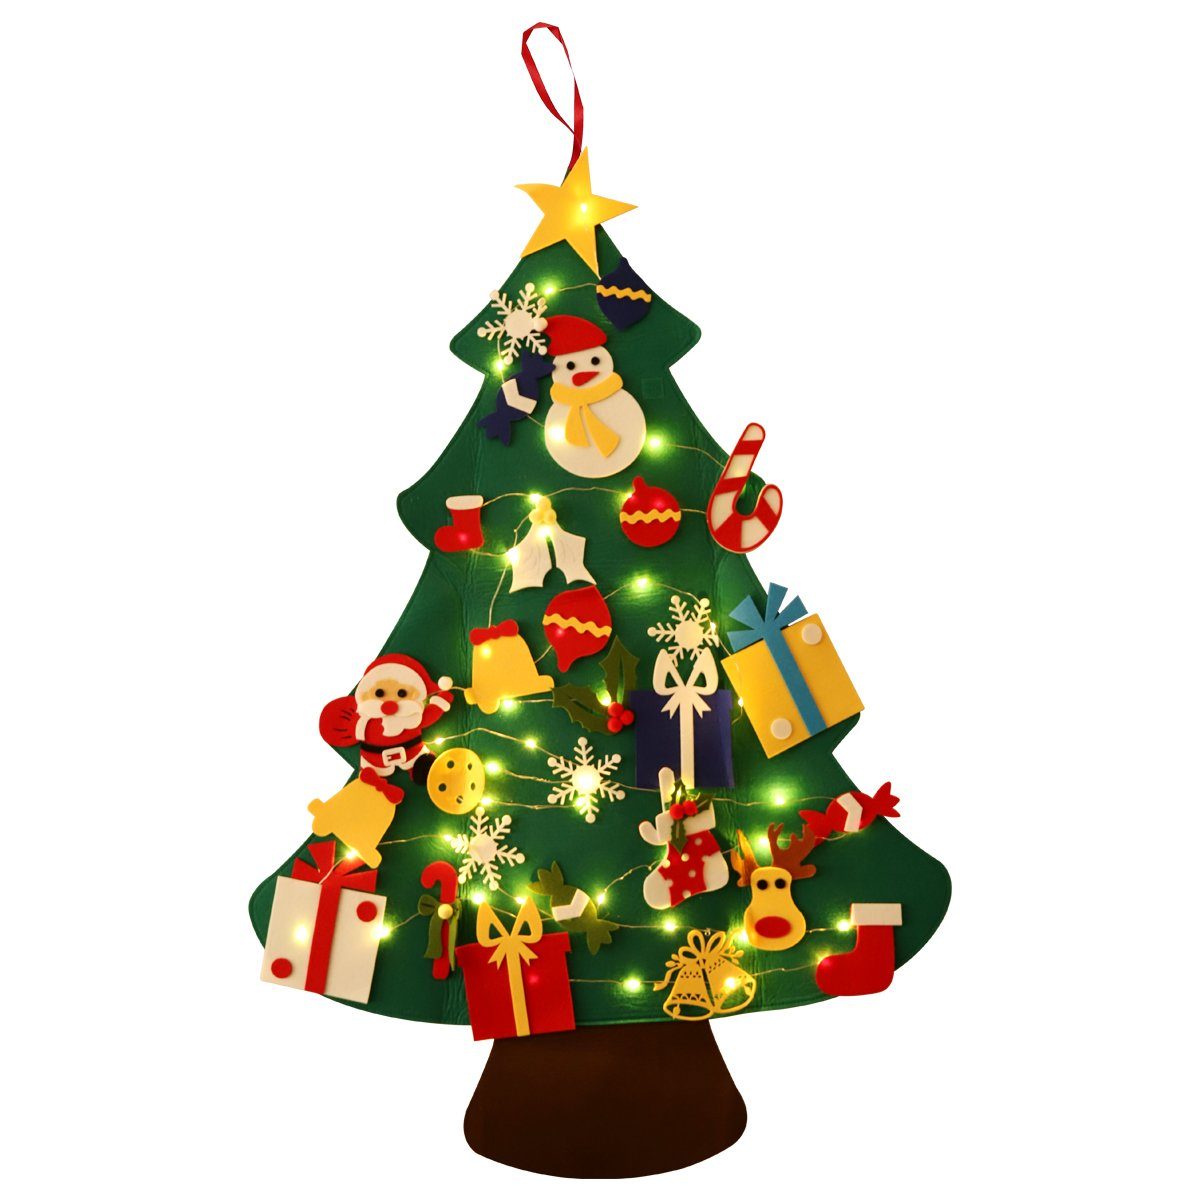 Salcar LED-Lichterkette Lichterkette LED Kupferdraht 1m Filz Weihnachtsbaum Kinder zum Basteln, DIY Weihnachtsbaum Weihnachtsges für Kinder